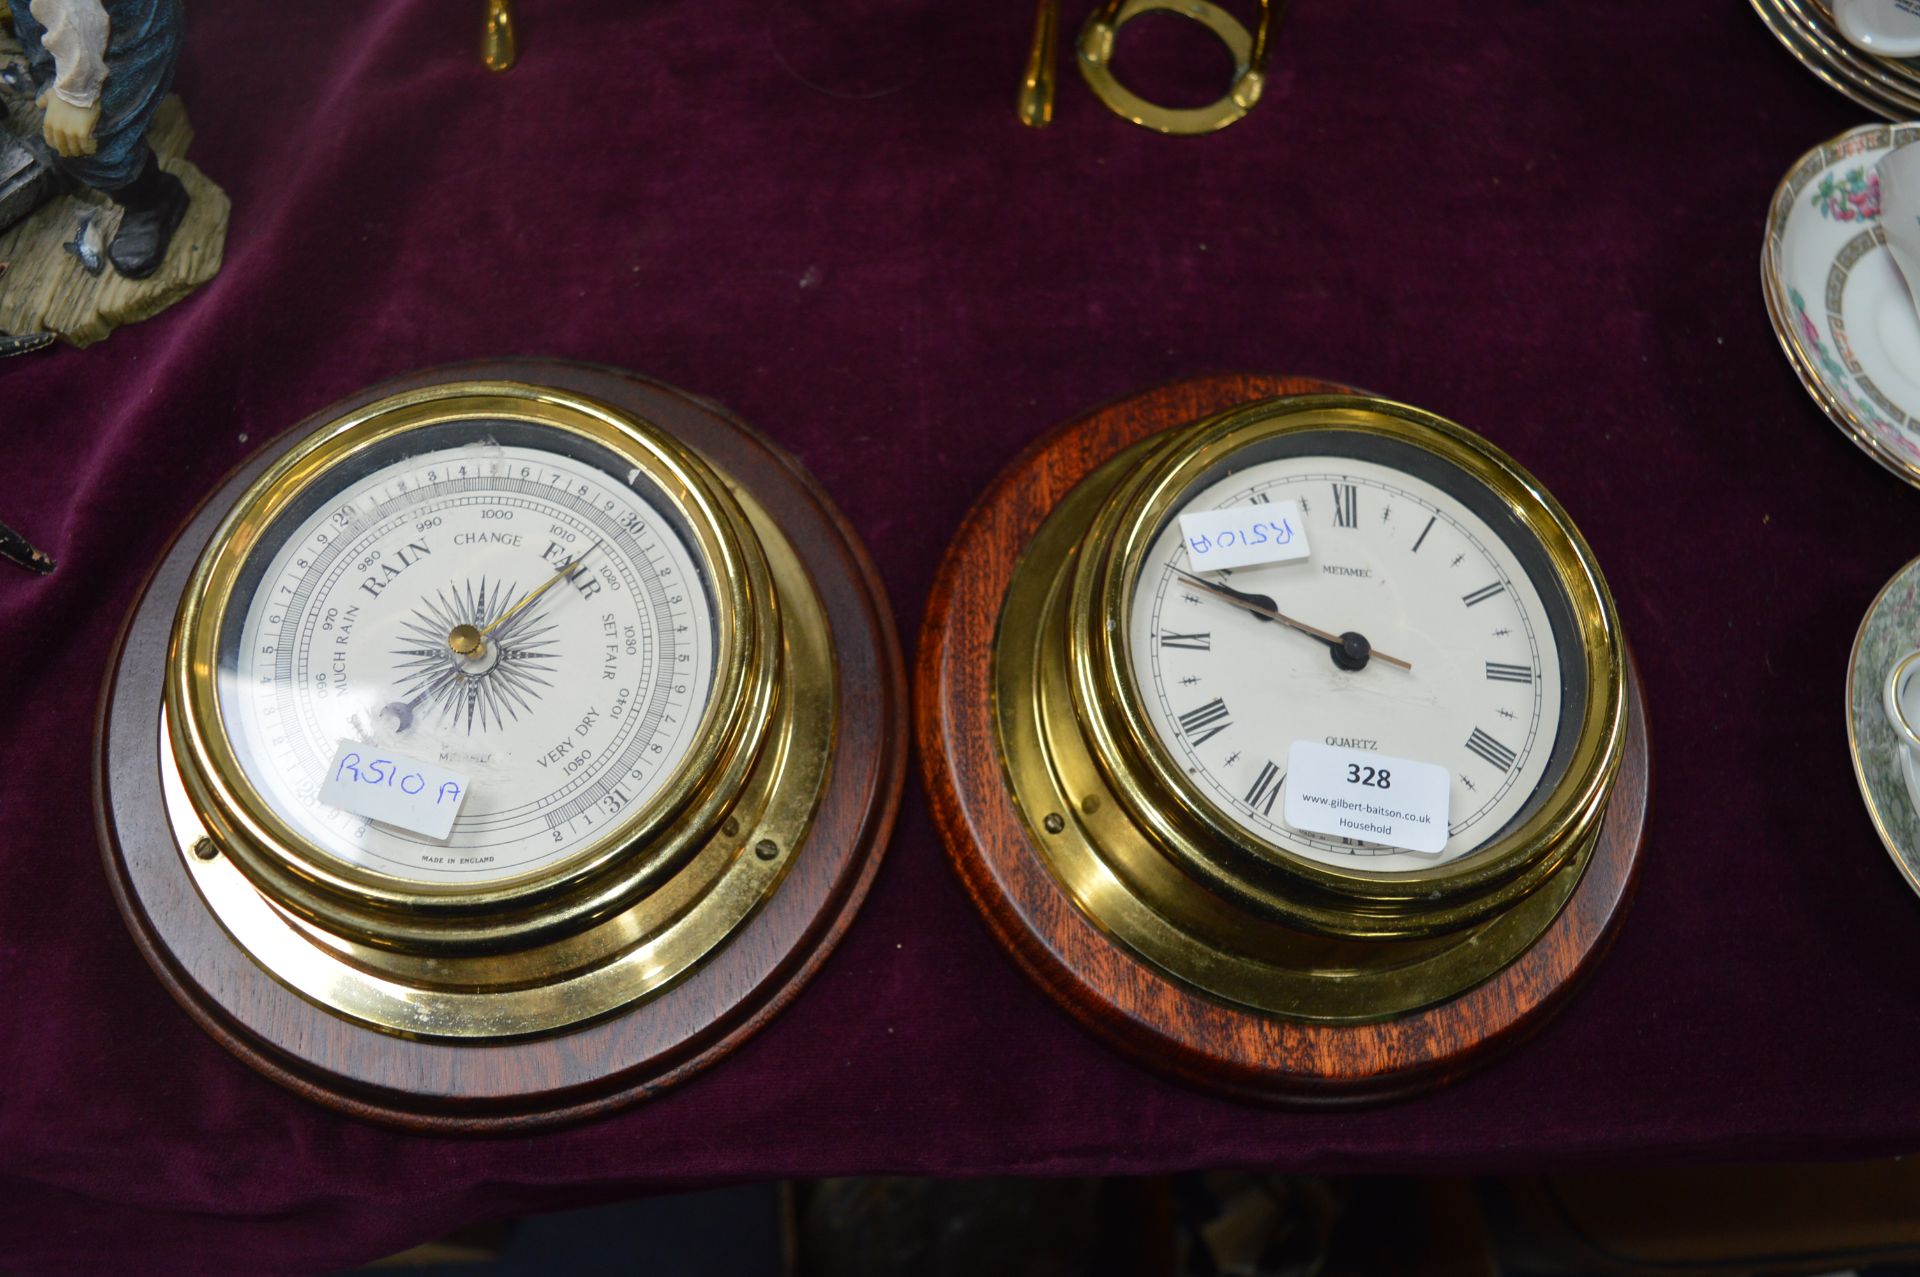 Metamec Barometer and Wall Clock